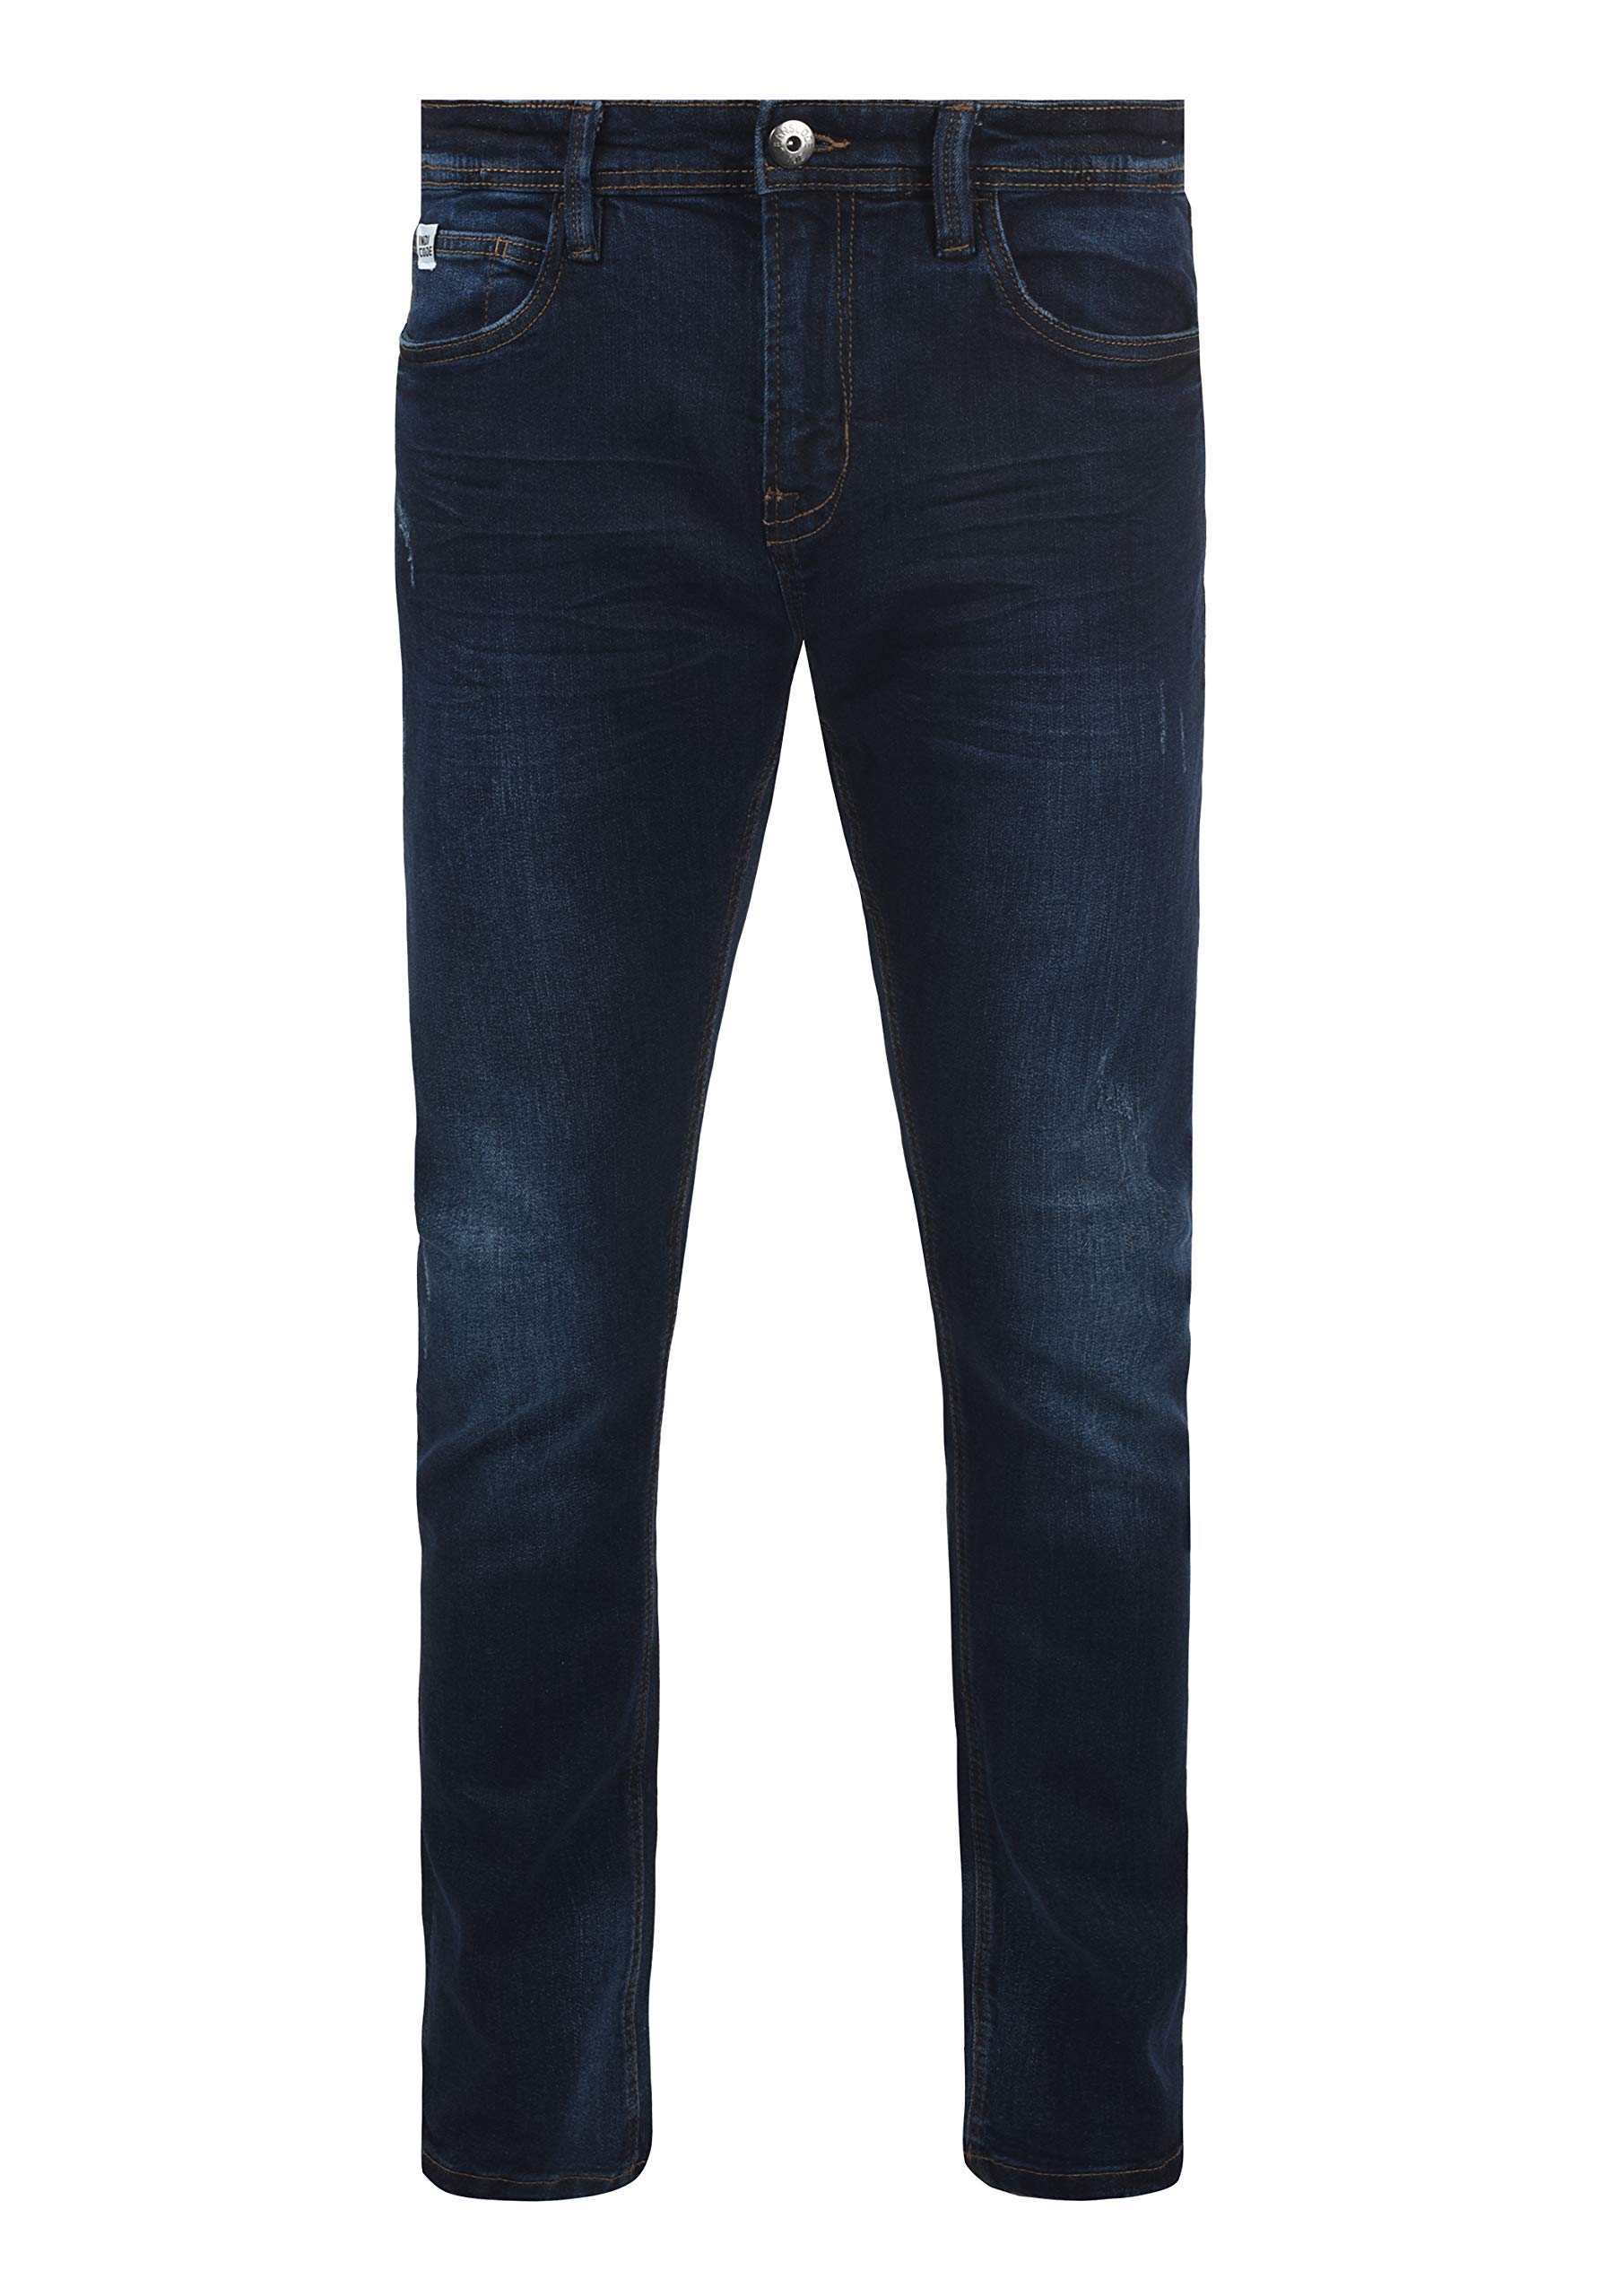 Indicode IDAldersgate Herren Jeans Hose Denim mit Stretch und Destroyed-Look Slim Fit, Größe:36/34, Farbe:Dark Blue (855)